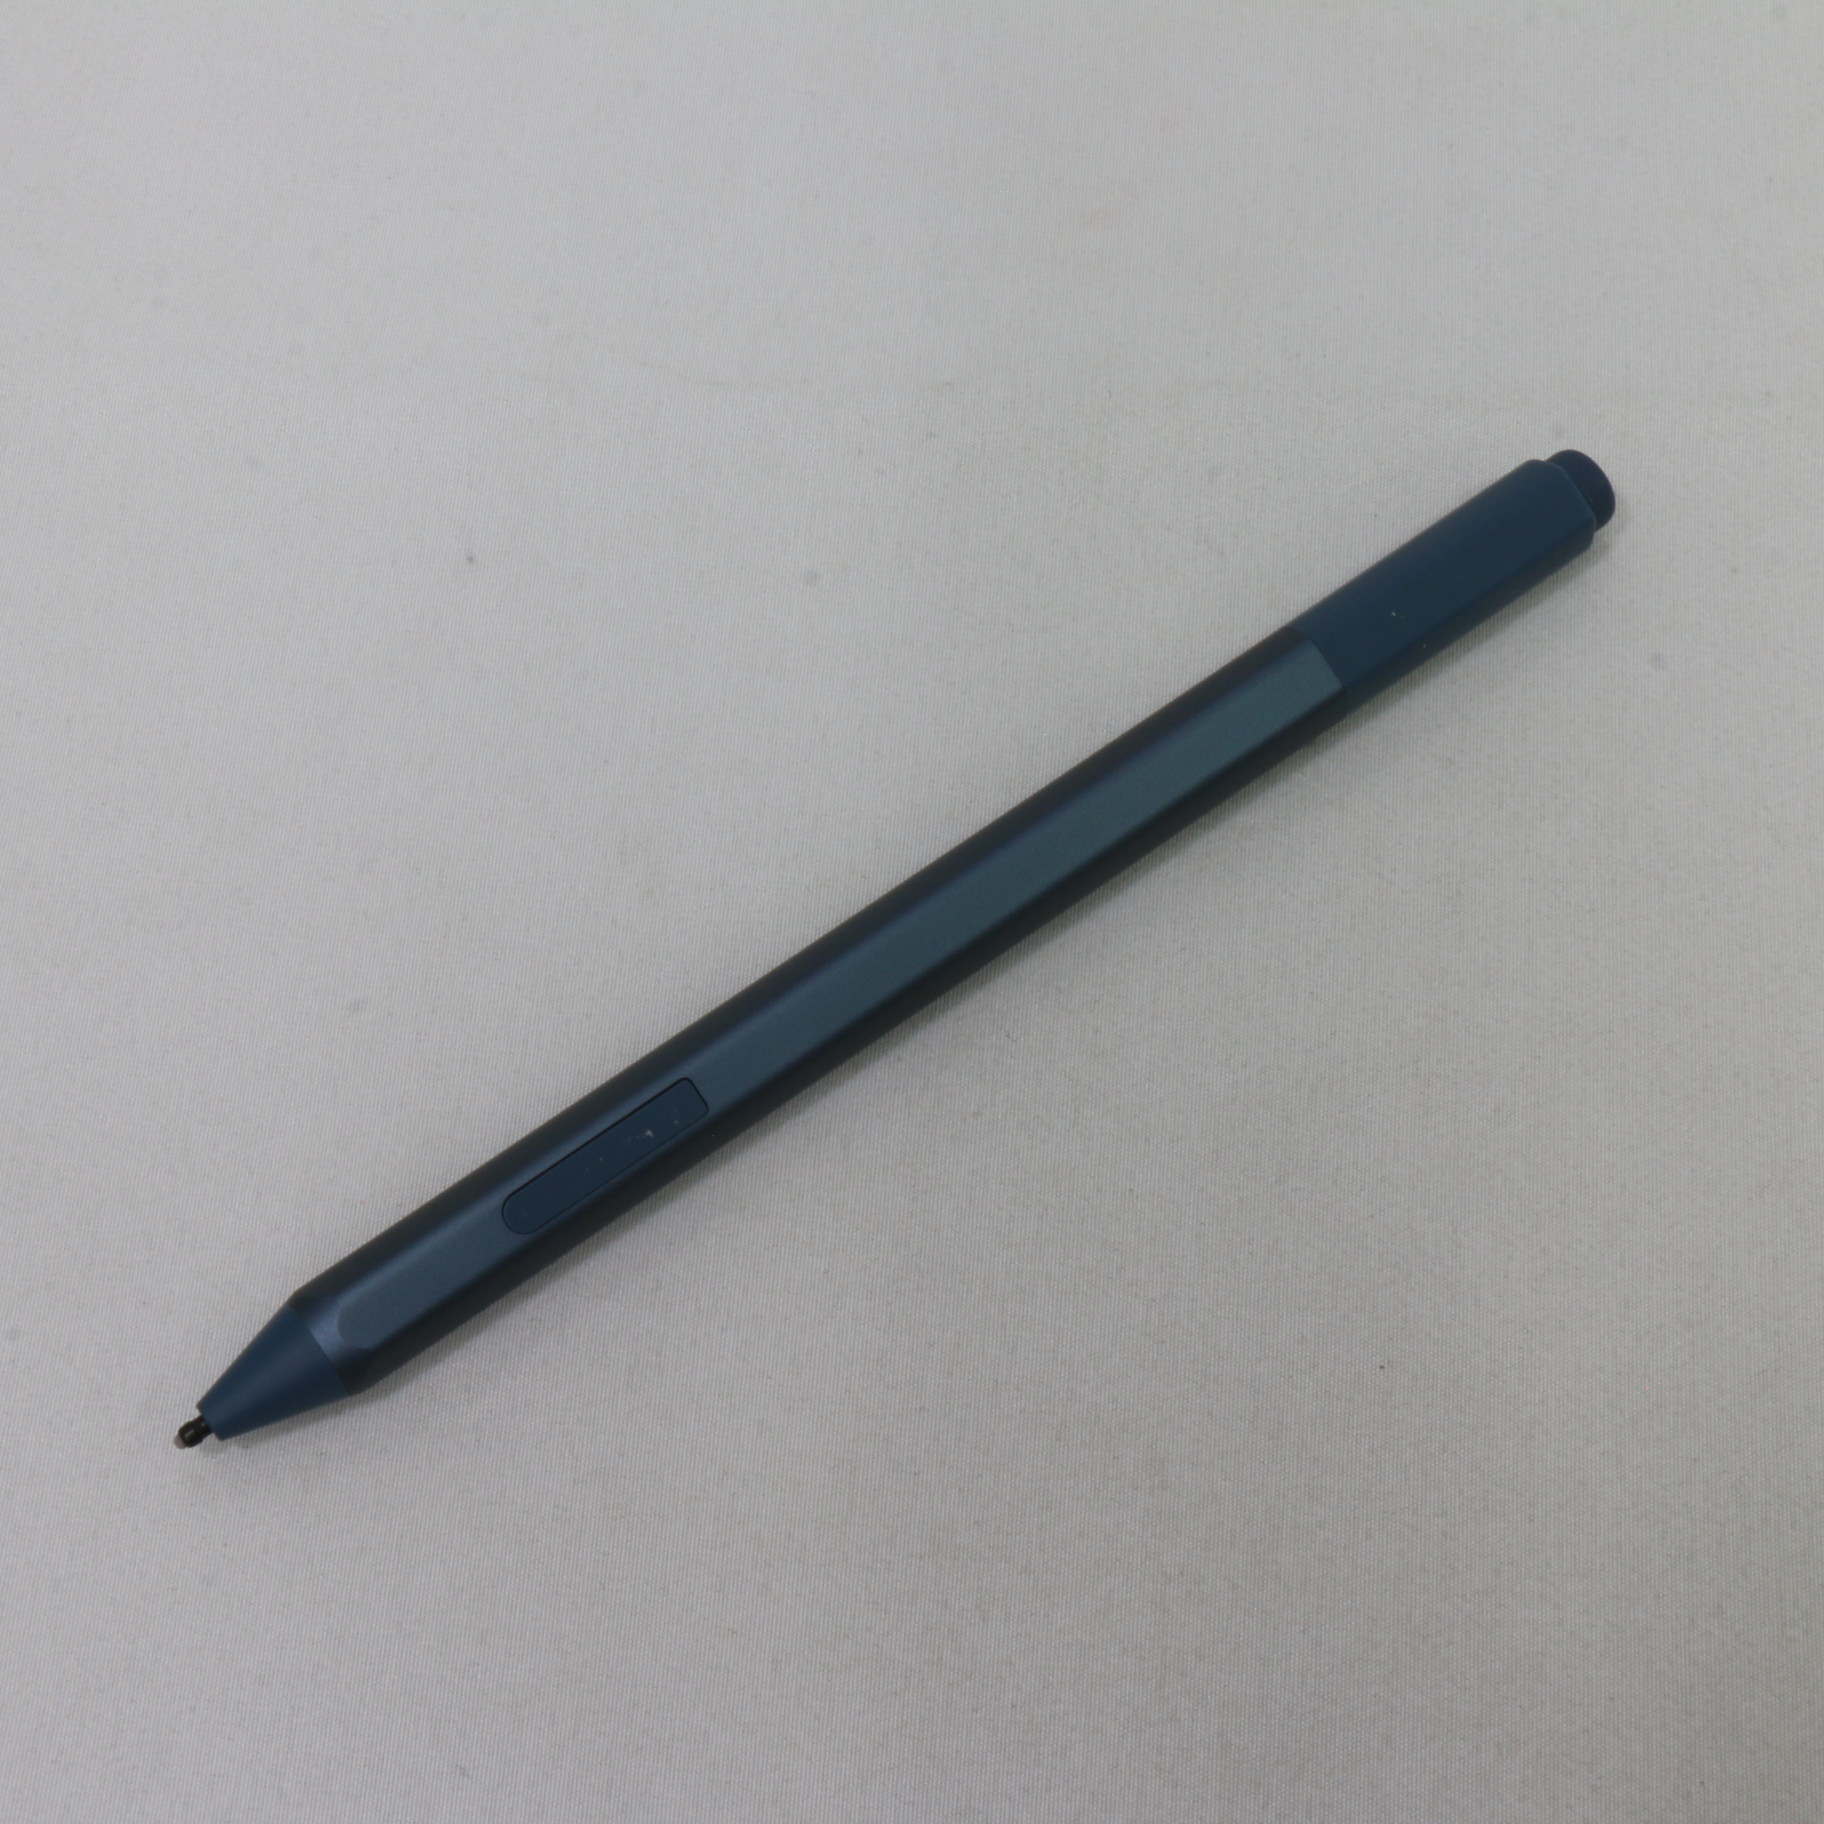 【新品未使用】Microsoft Surfaceペン アイスブルーEYU-00055カラー